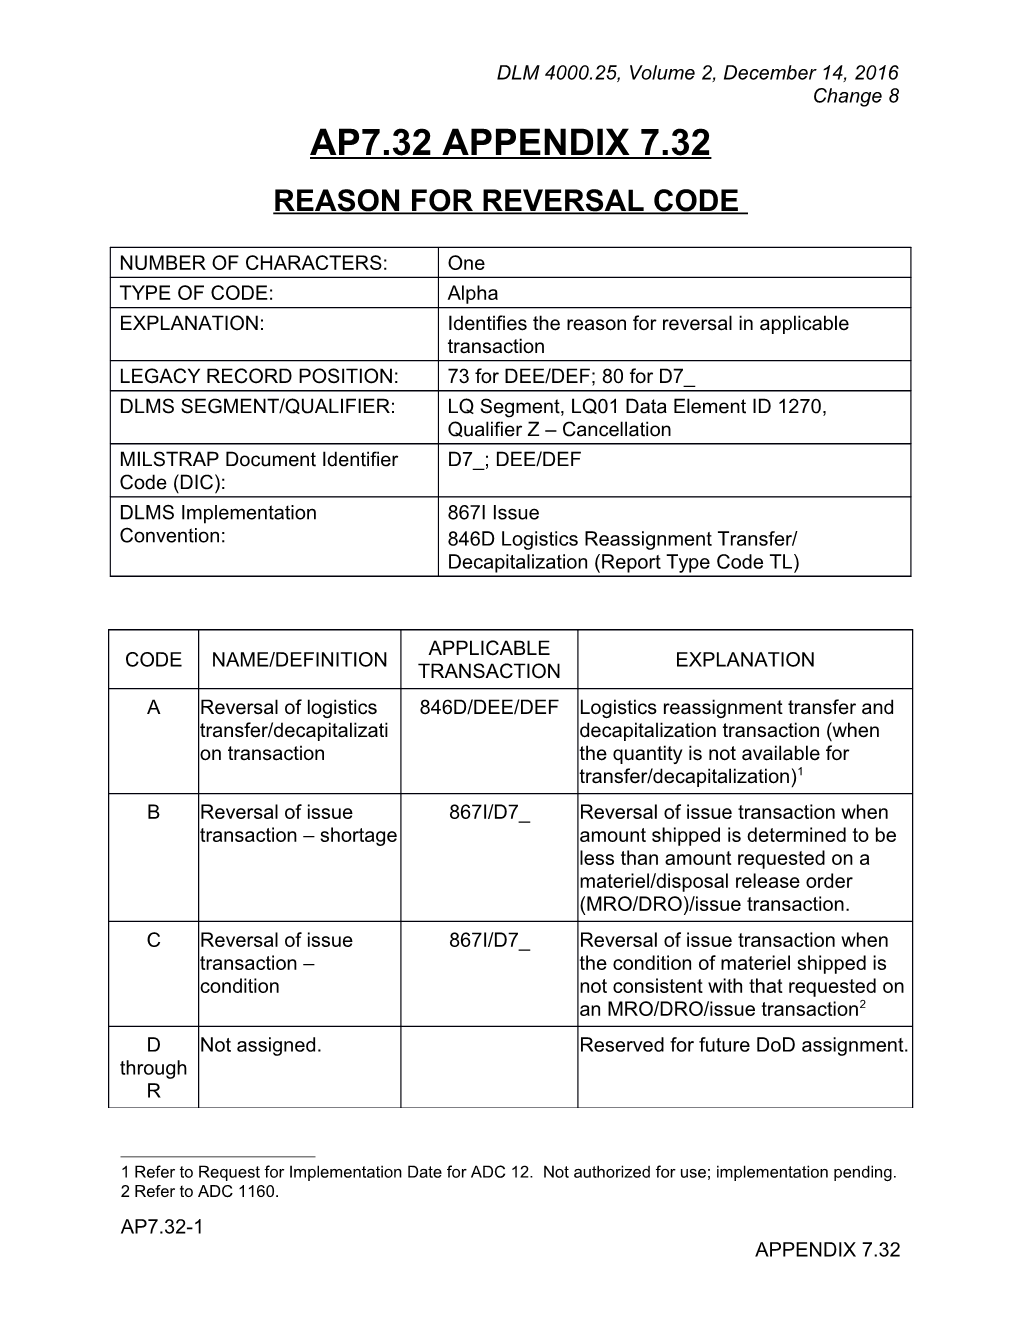 Appendix 7.32 - Reason for Reversal Code List